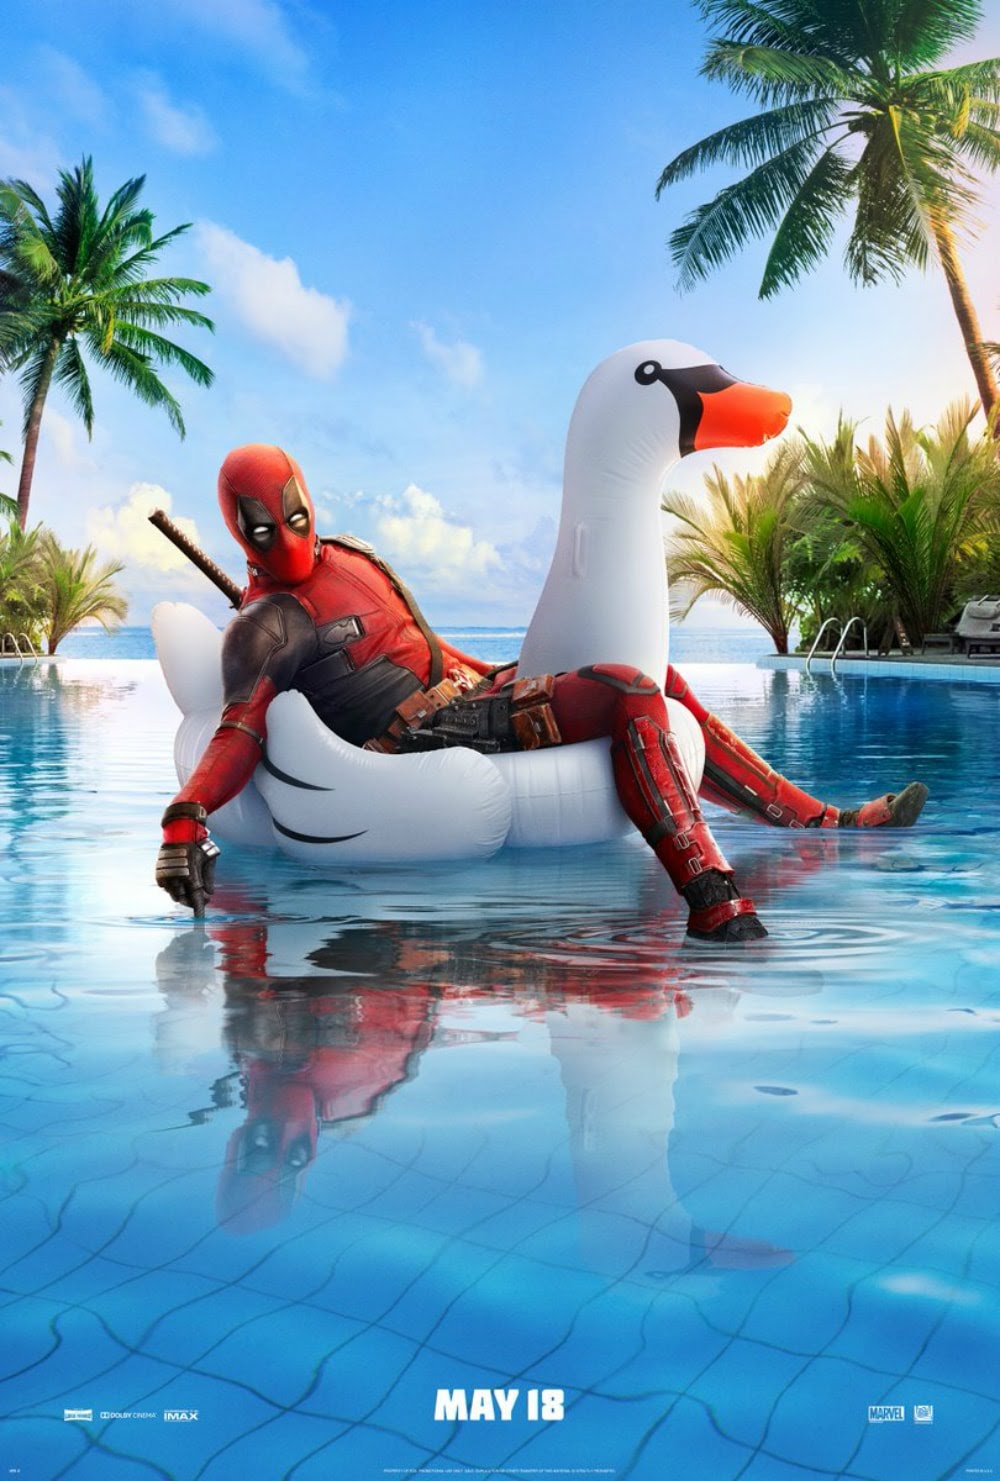 Deadpool Enjoys A Pool Party 夏だ プールだ デッドプールに出かけよう デッドプール 2 が デッドプールがプールでチルアウトのダジャレみたいなプールのポスターをリリース B Side Of Cia